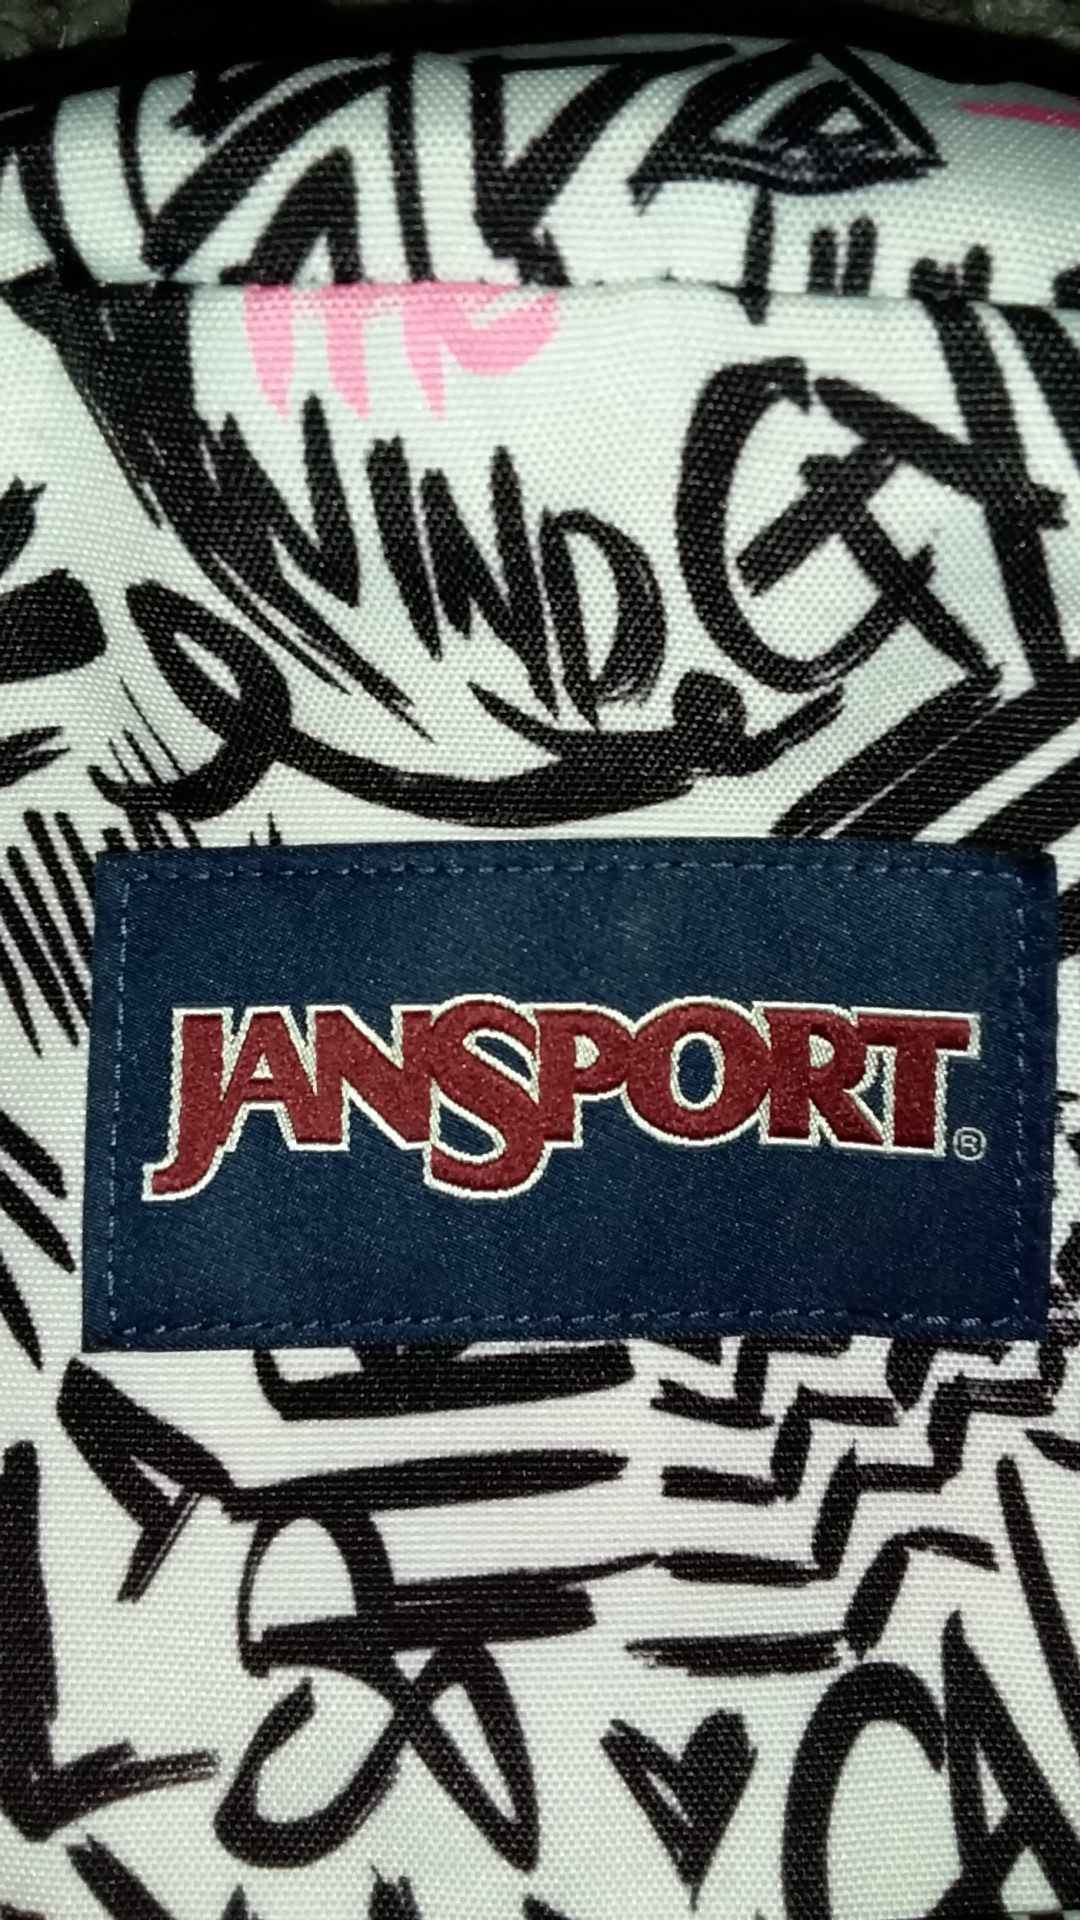 Girls JanSport backpack